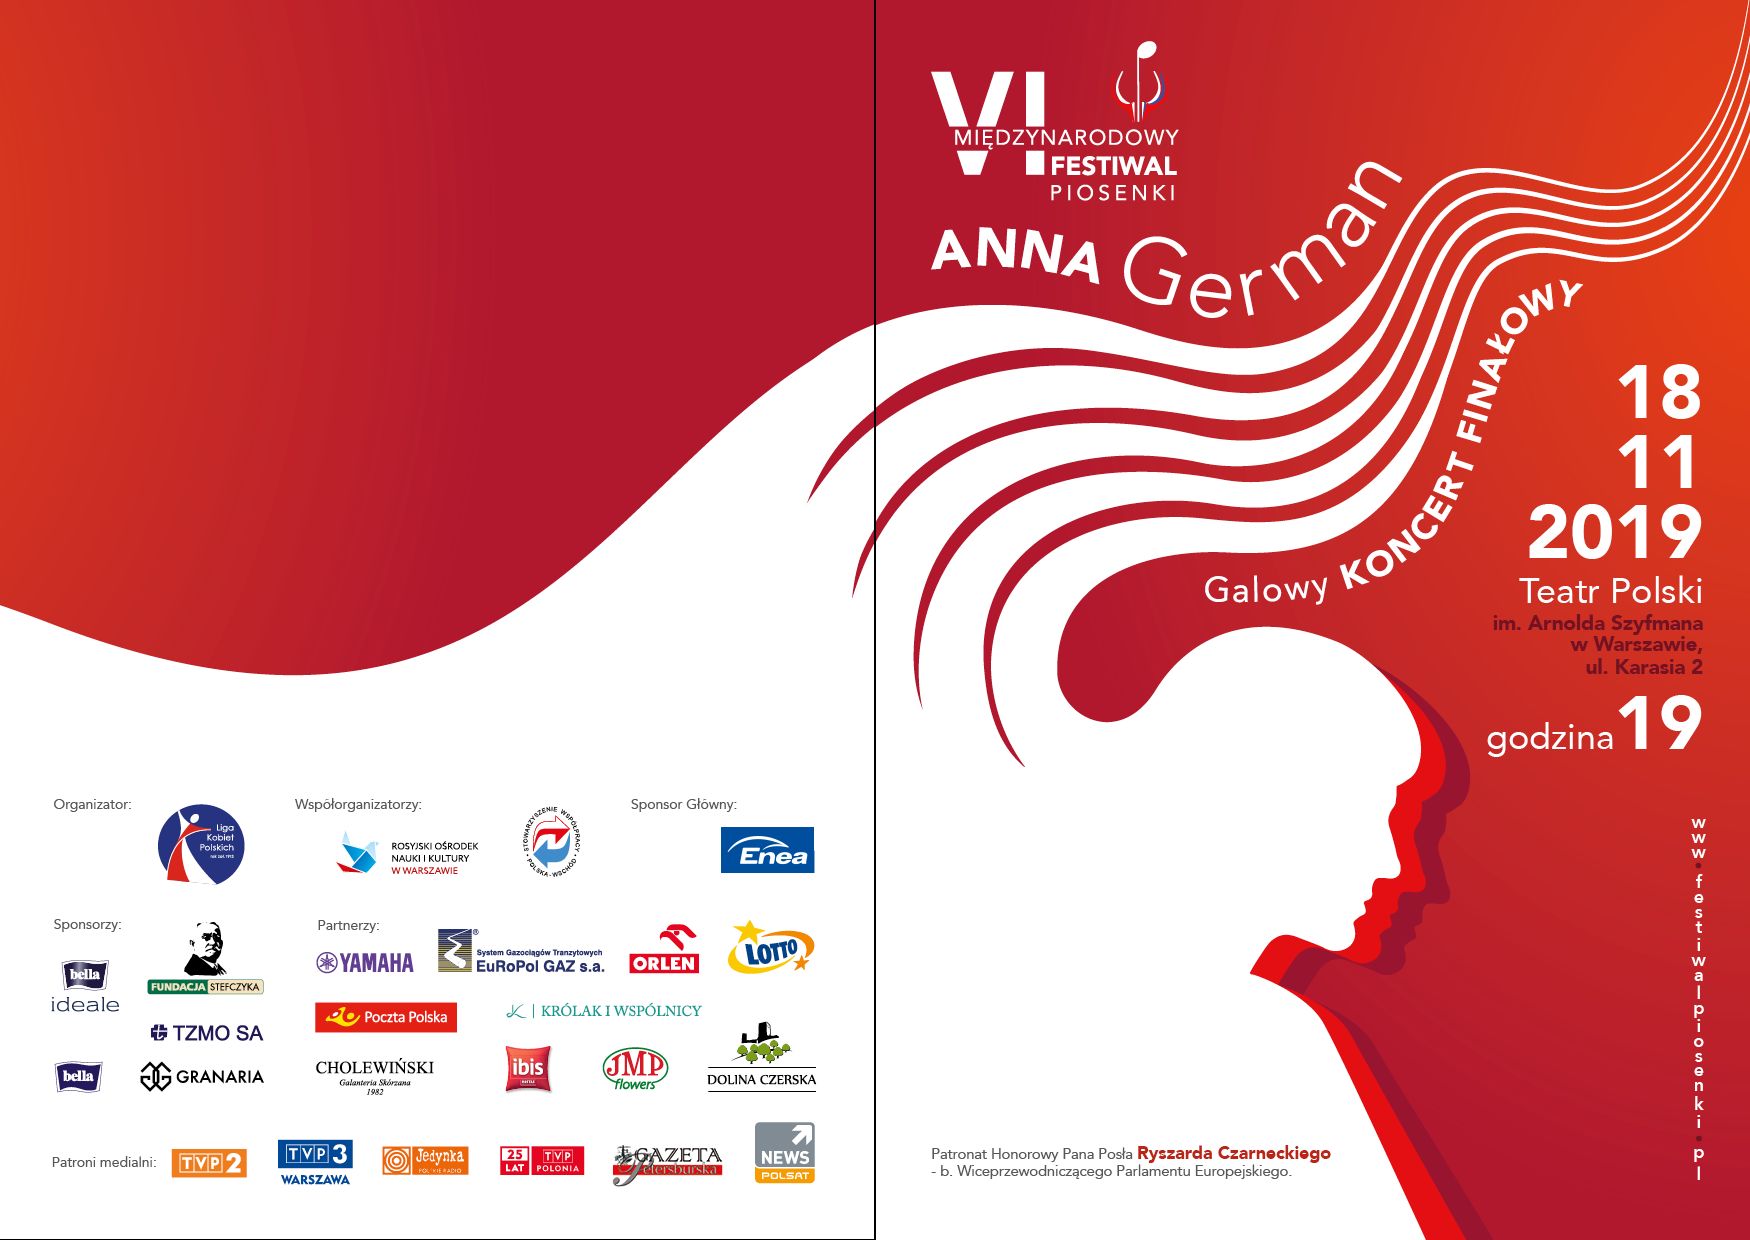 VI международный фестиваль Анны Герман состоится 18 ноября в 19 часов в Польском театре в Варшаве